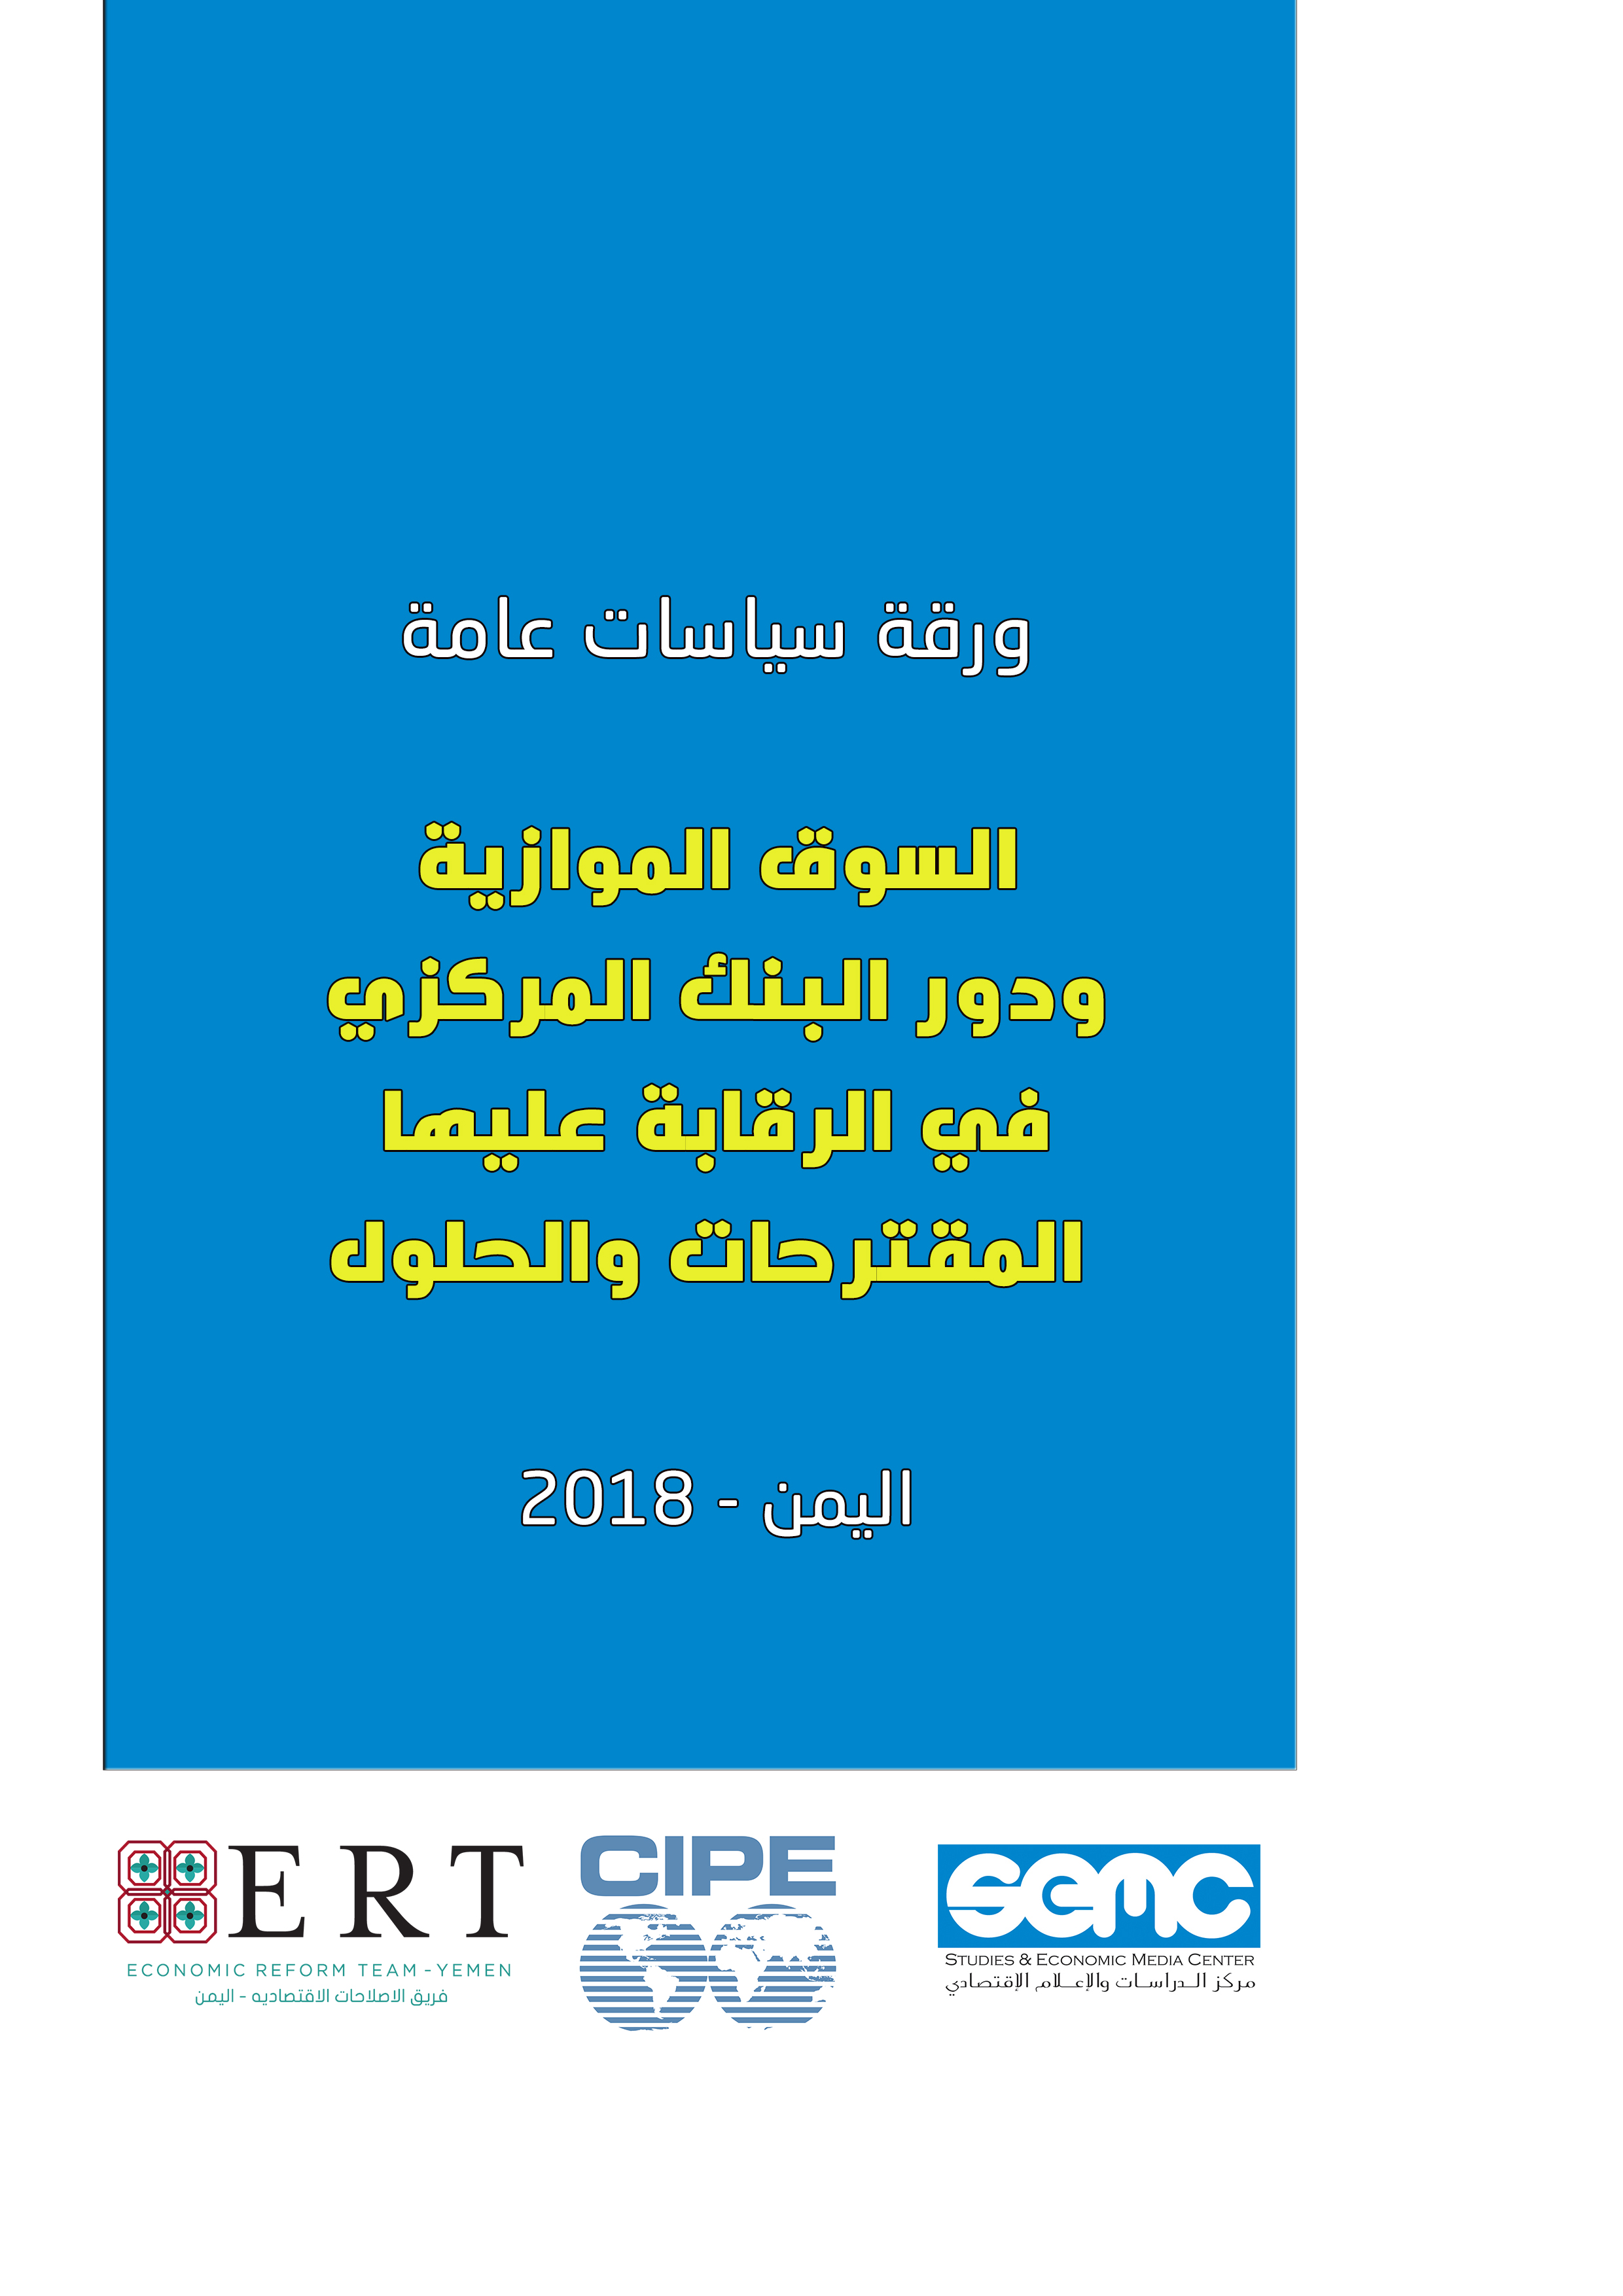 اطلاق ورقة سياسات حول السوق الموازية ” السوداء ” ودور البنك المركزي اليمني في الرقابة عليها